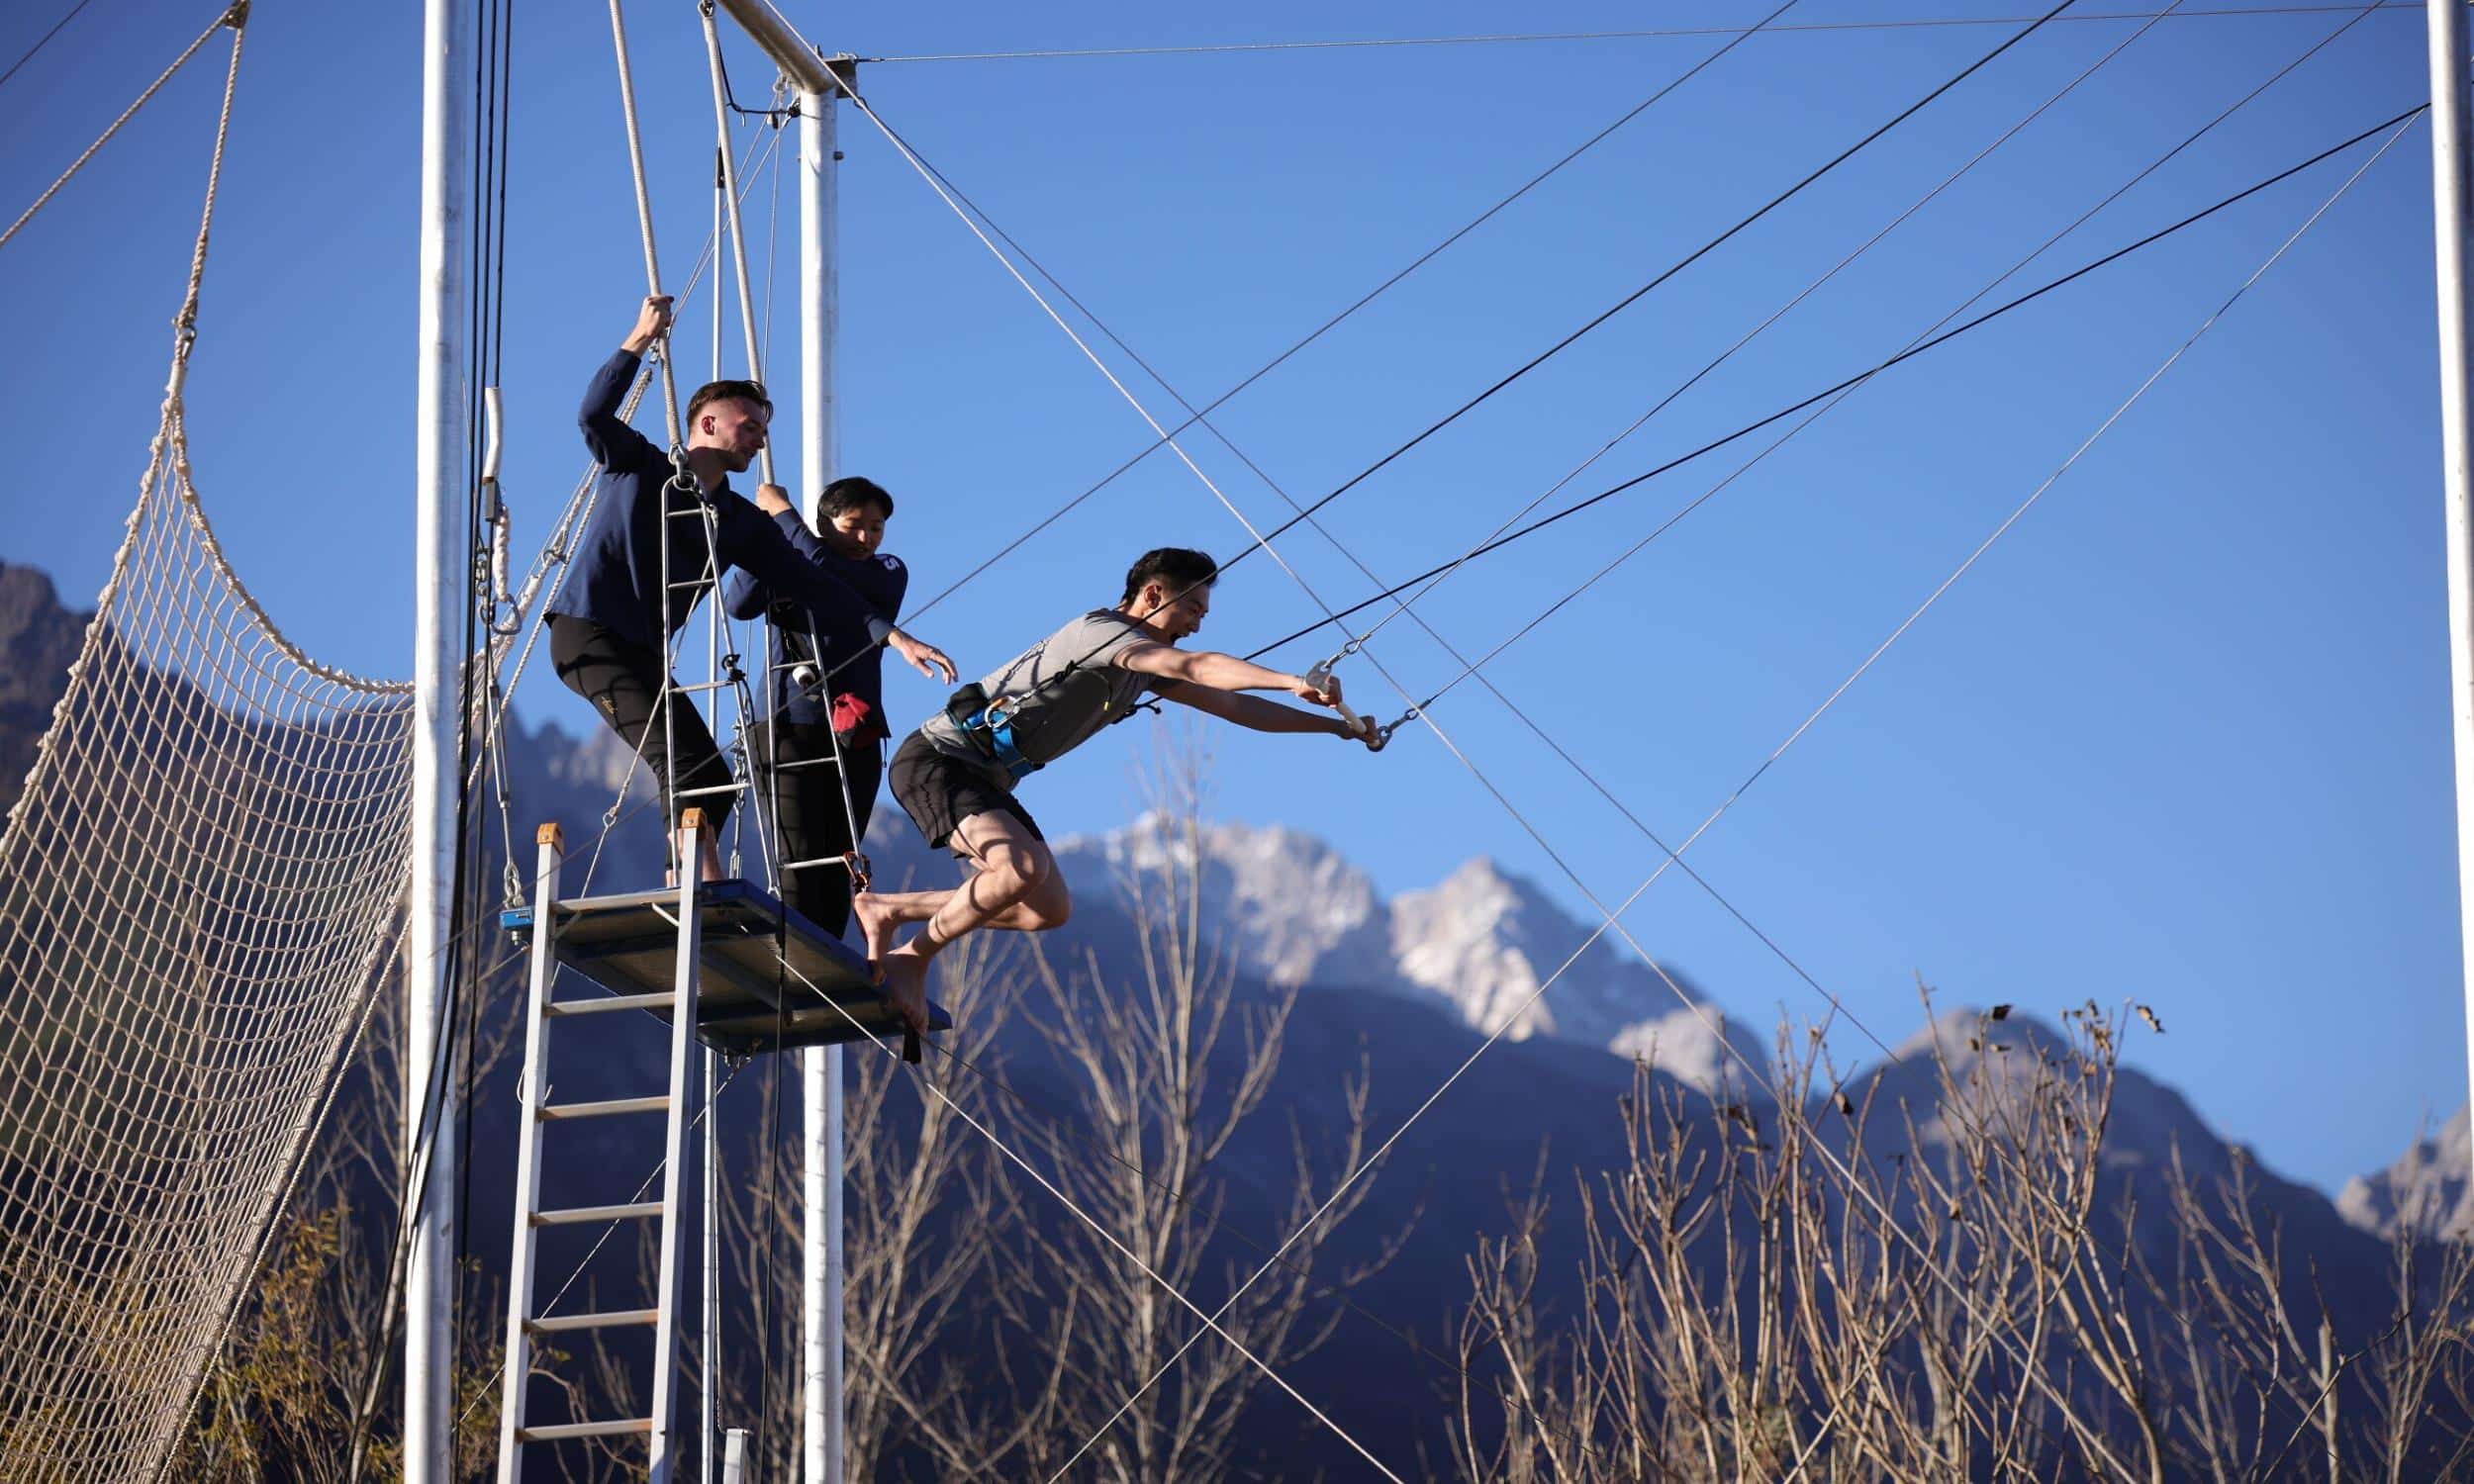 Lijiang ClubMed Activities Trapeze